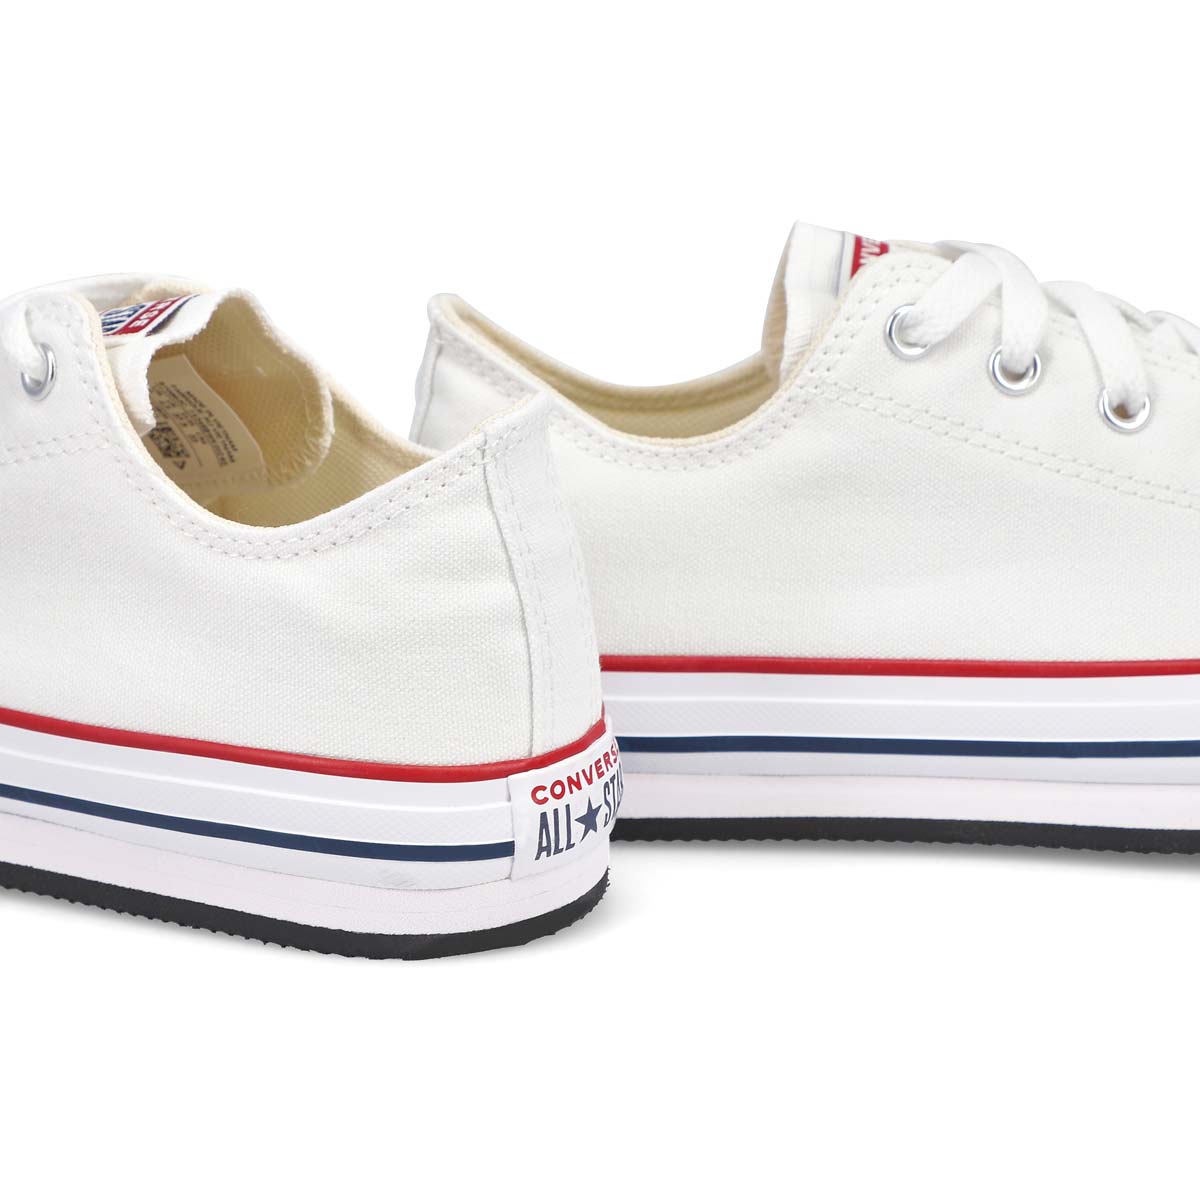 Girls' All Star Platform Sneaker - White